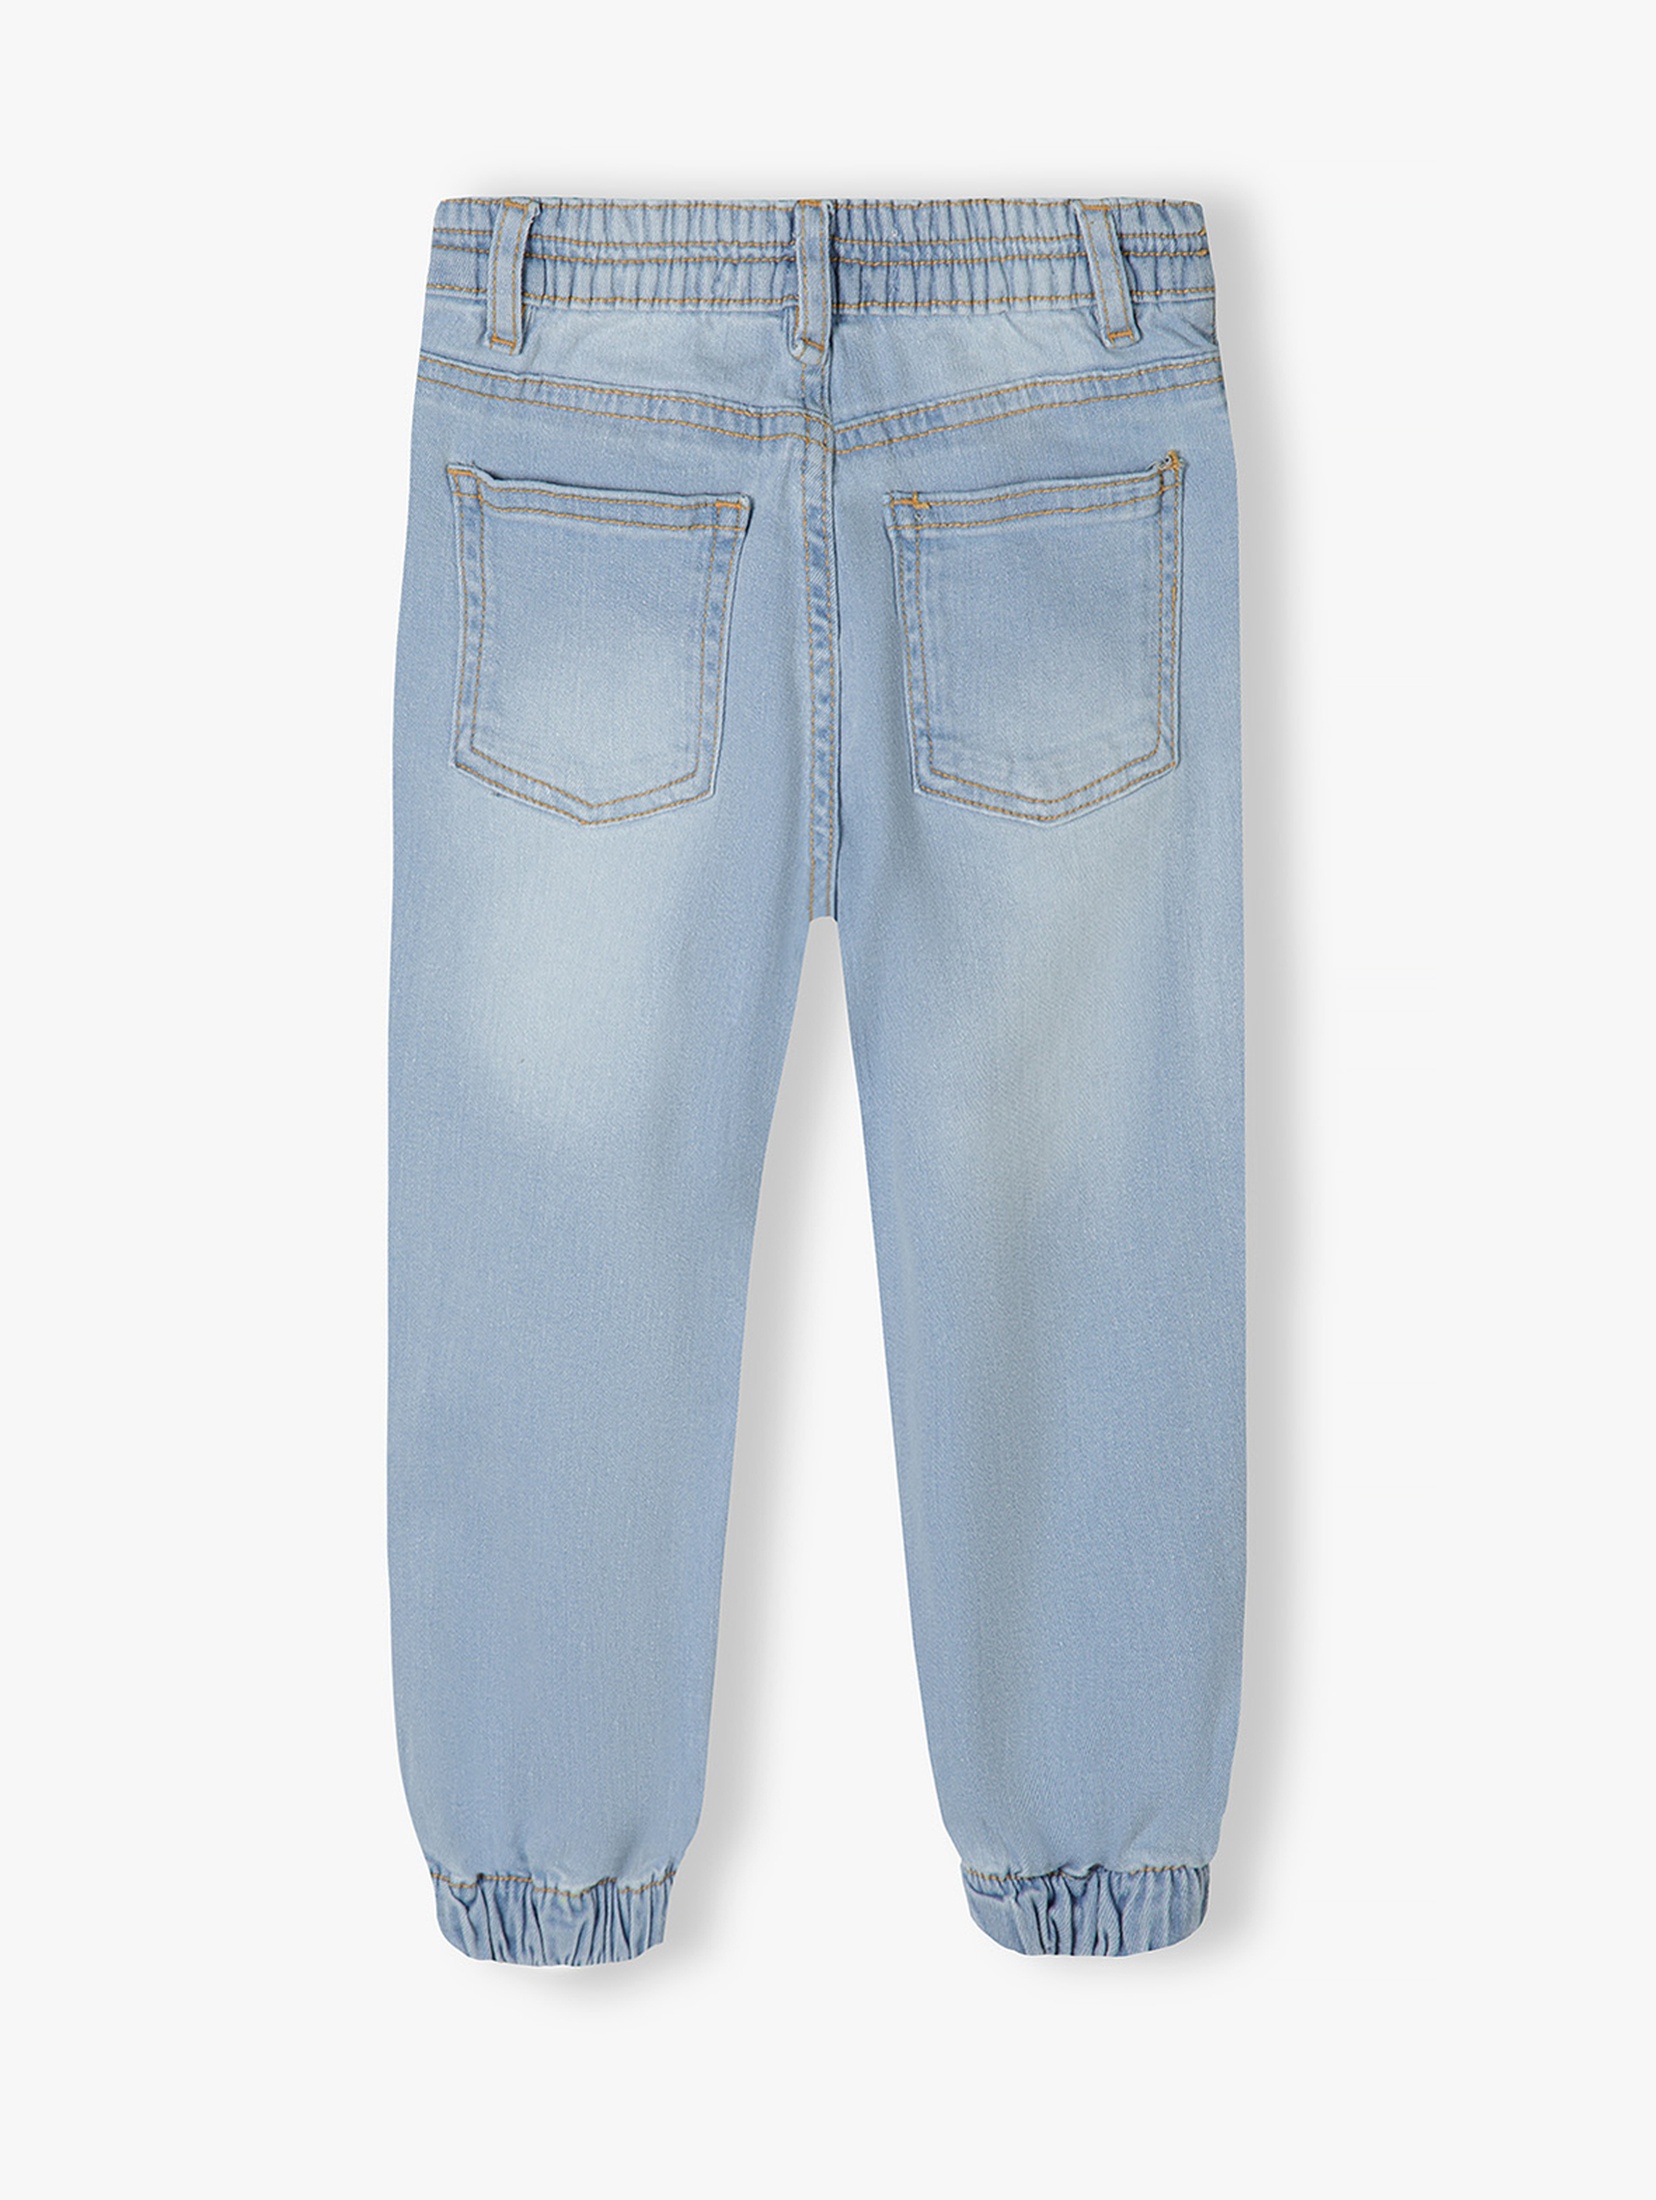 Jasne spodnie jeansowe typu joggery dziewczęce